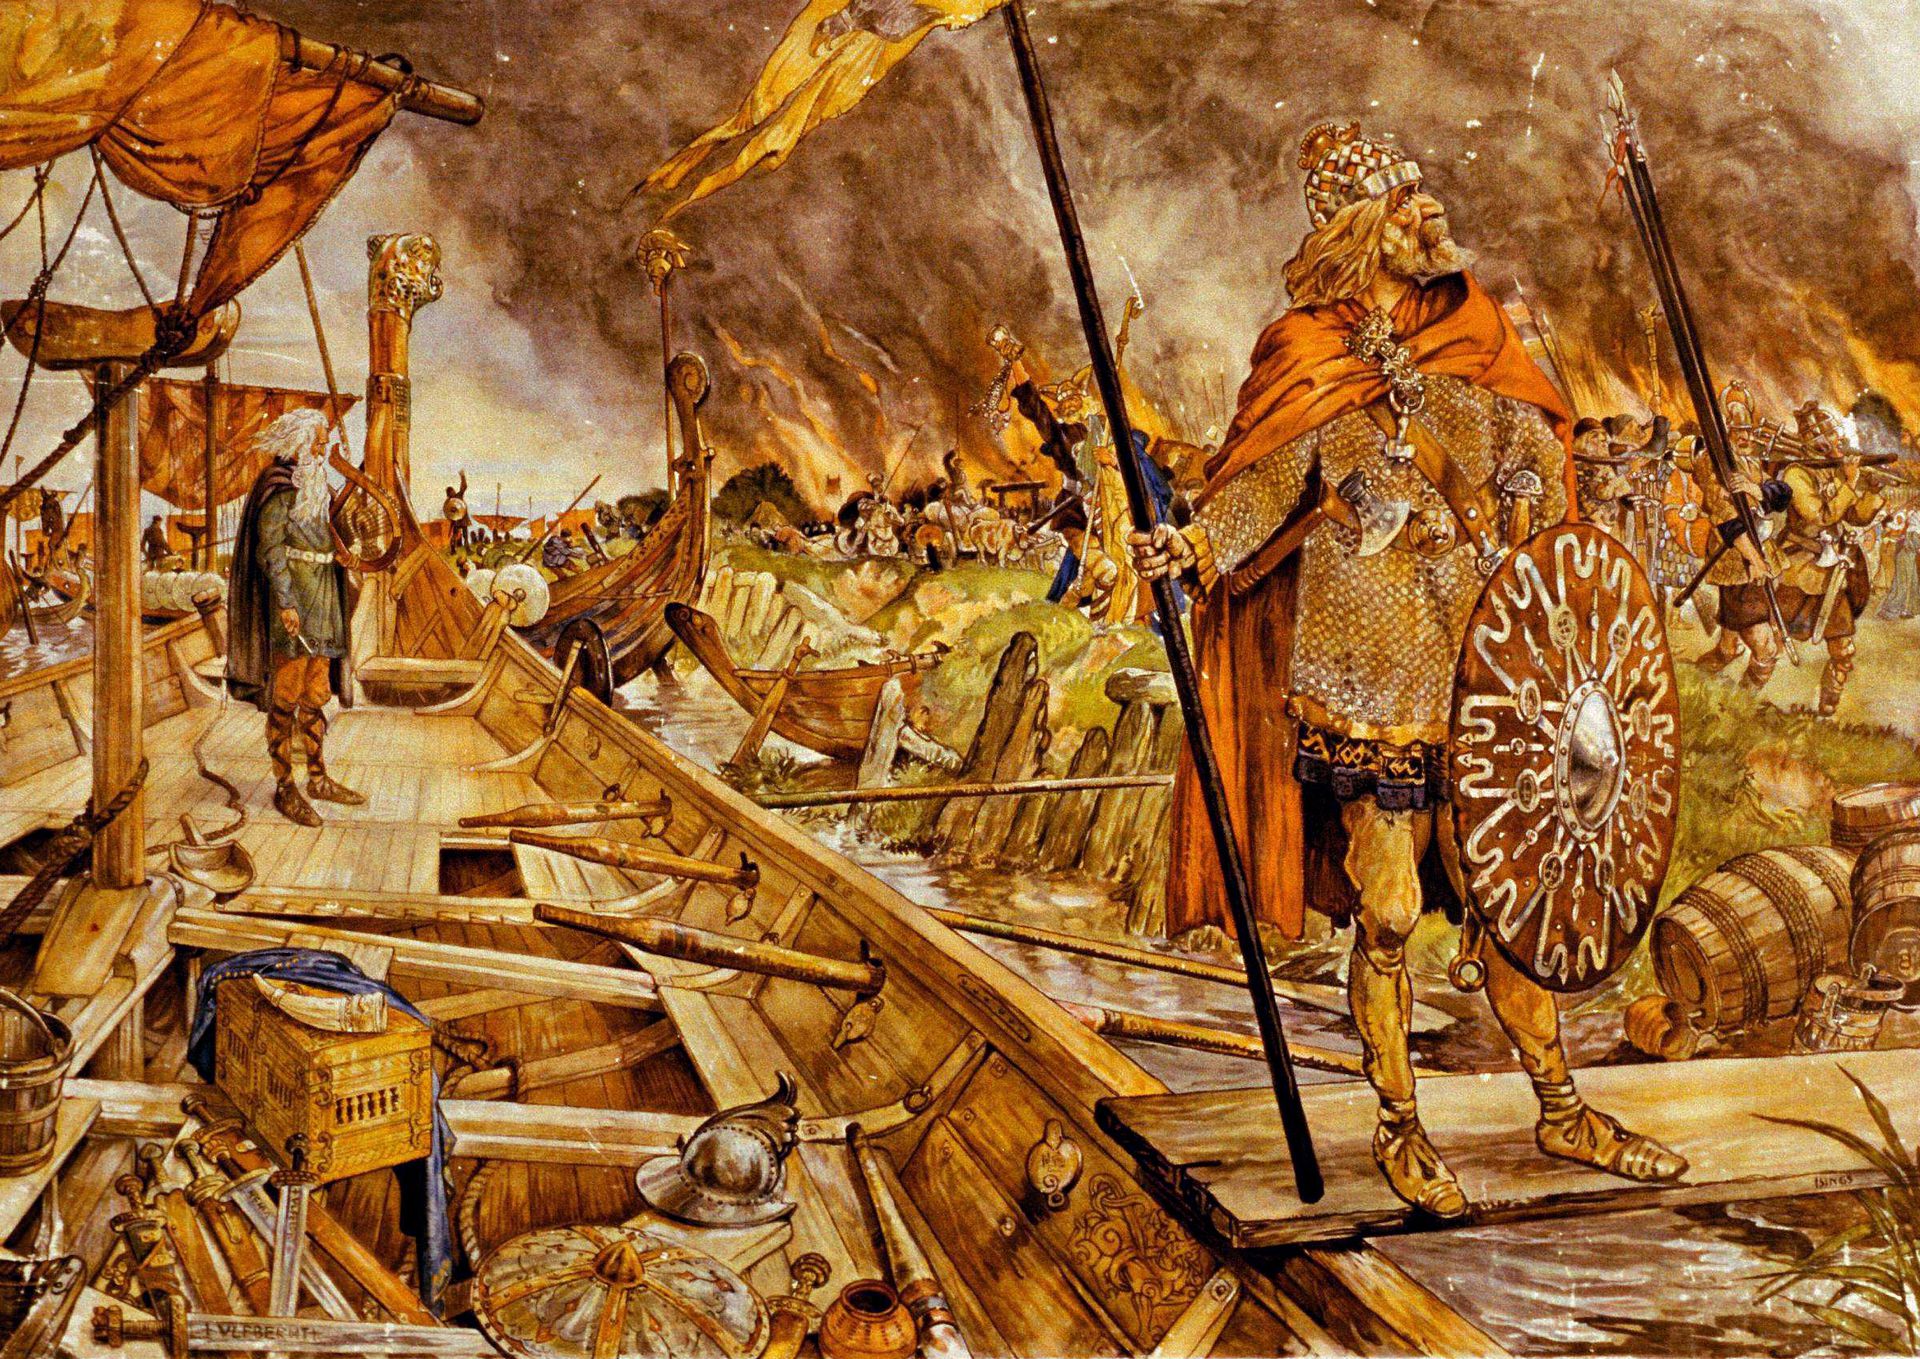 Нападение на славянском. Варяги Норманны. Харальд суровый Викинги. Древняя Скандинавия эпоха викингов. Бритты, Норманны, Варяги (Викинги).